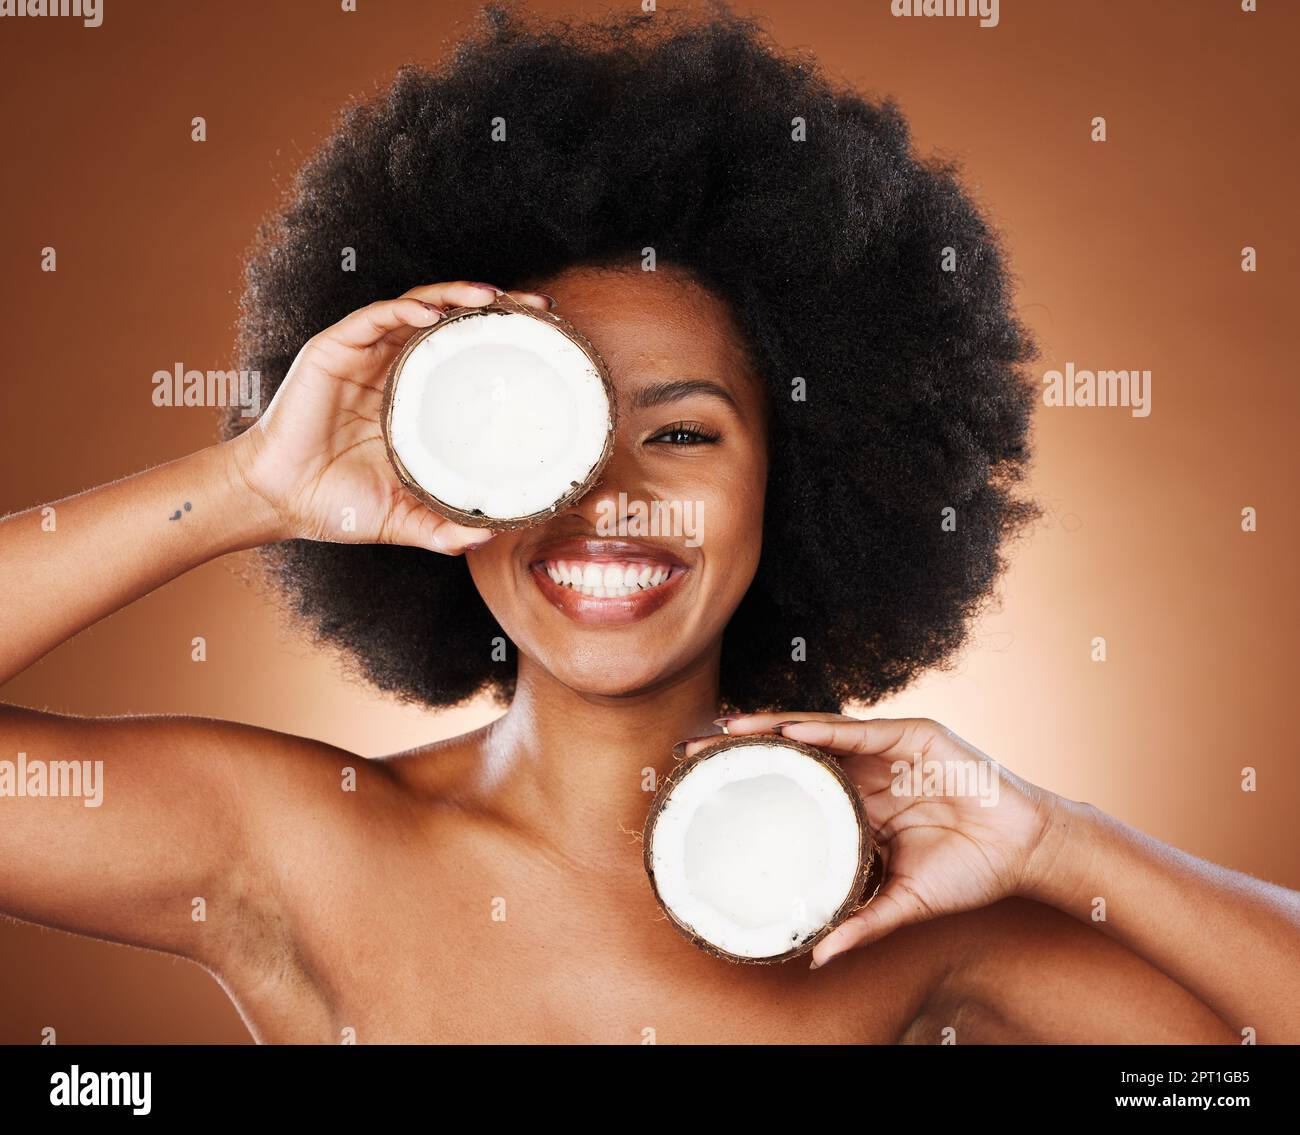 Kokosnuss, Studio und schwarze Frau natürliches Gesicht, Hautpflege und Haarförderung mit Modell für gesunde Lebensmittel oder Produktmarketing. Afrikanisches Modellporträt mit Stockfoto